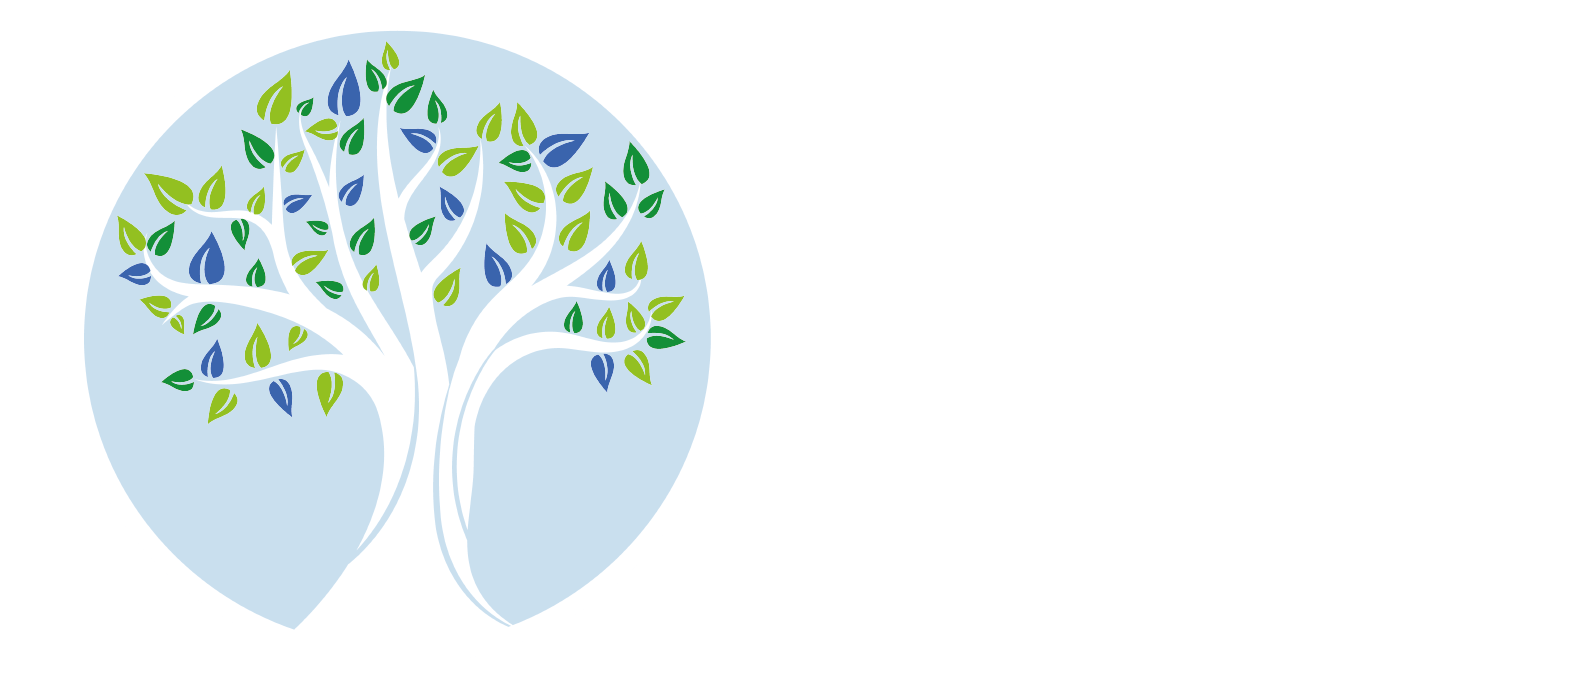 Pharma Partners